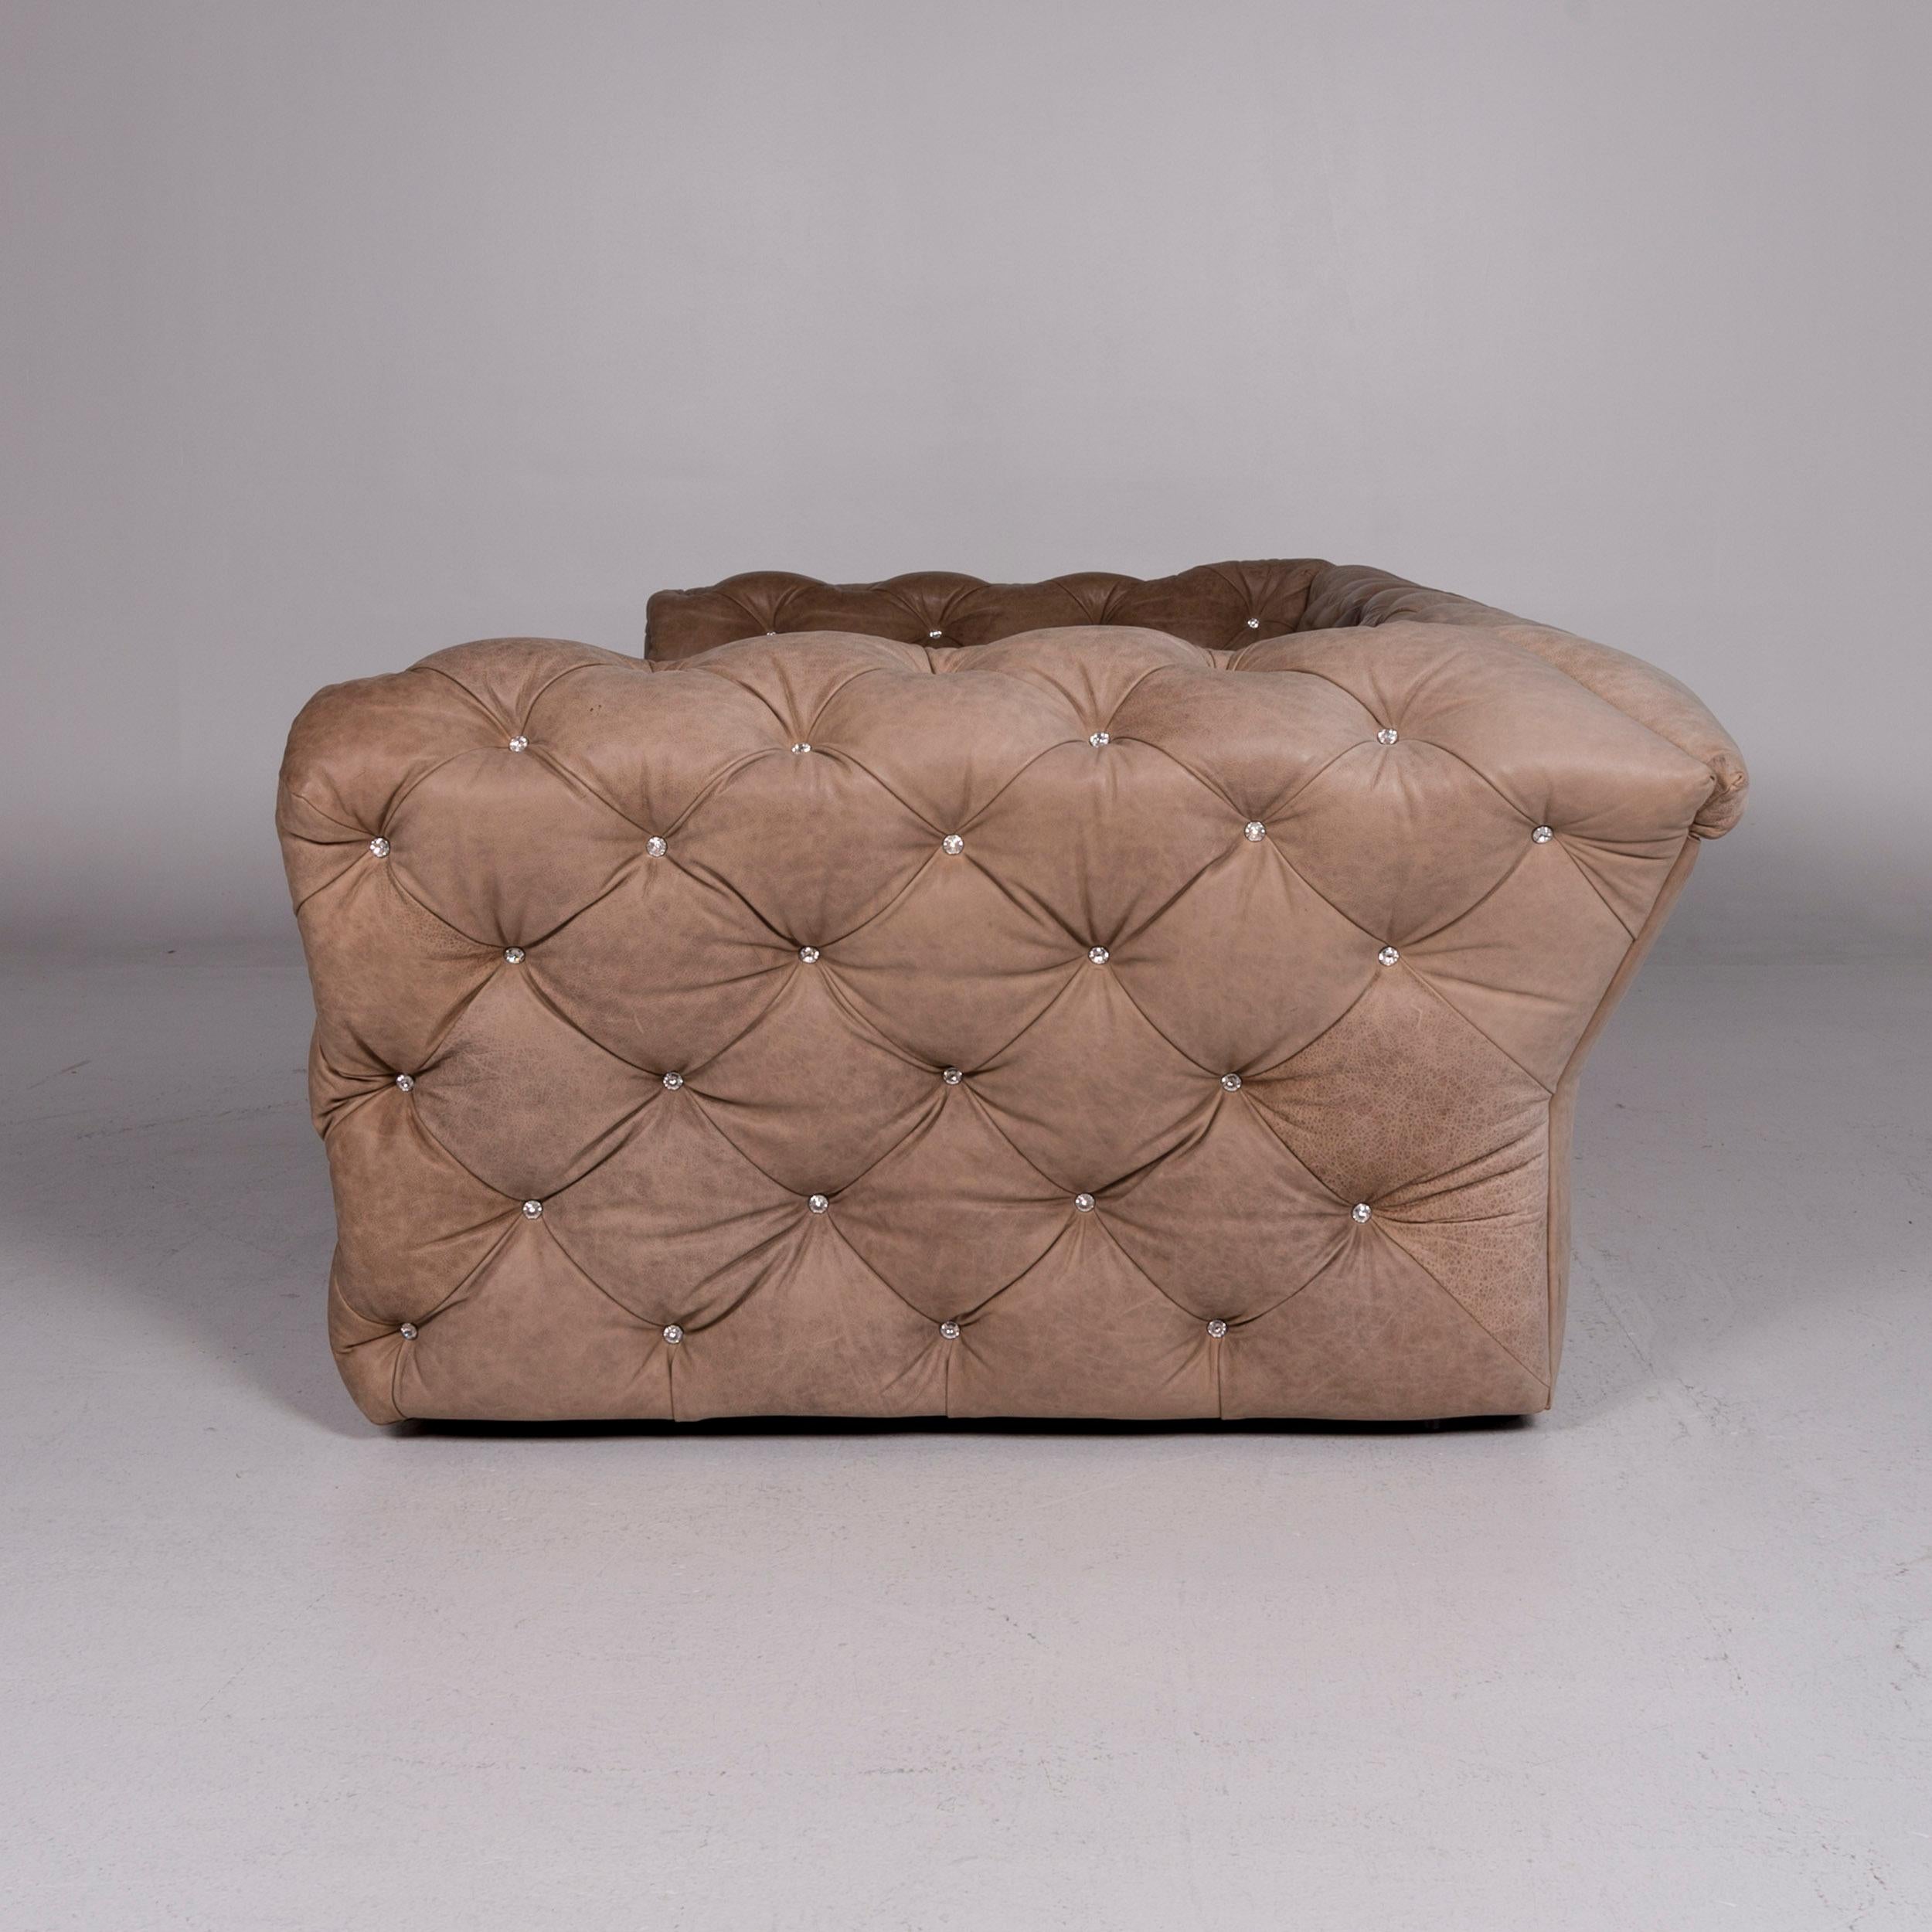 Bretz Marilyn Leather Sofa Brown Three-Seat Kaptionierung Glitterstones For Sale 5